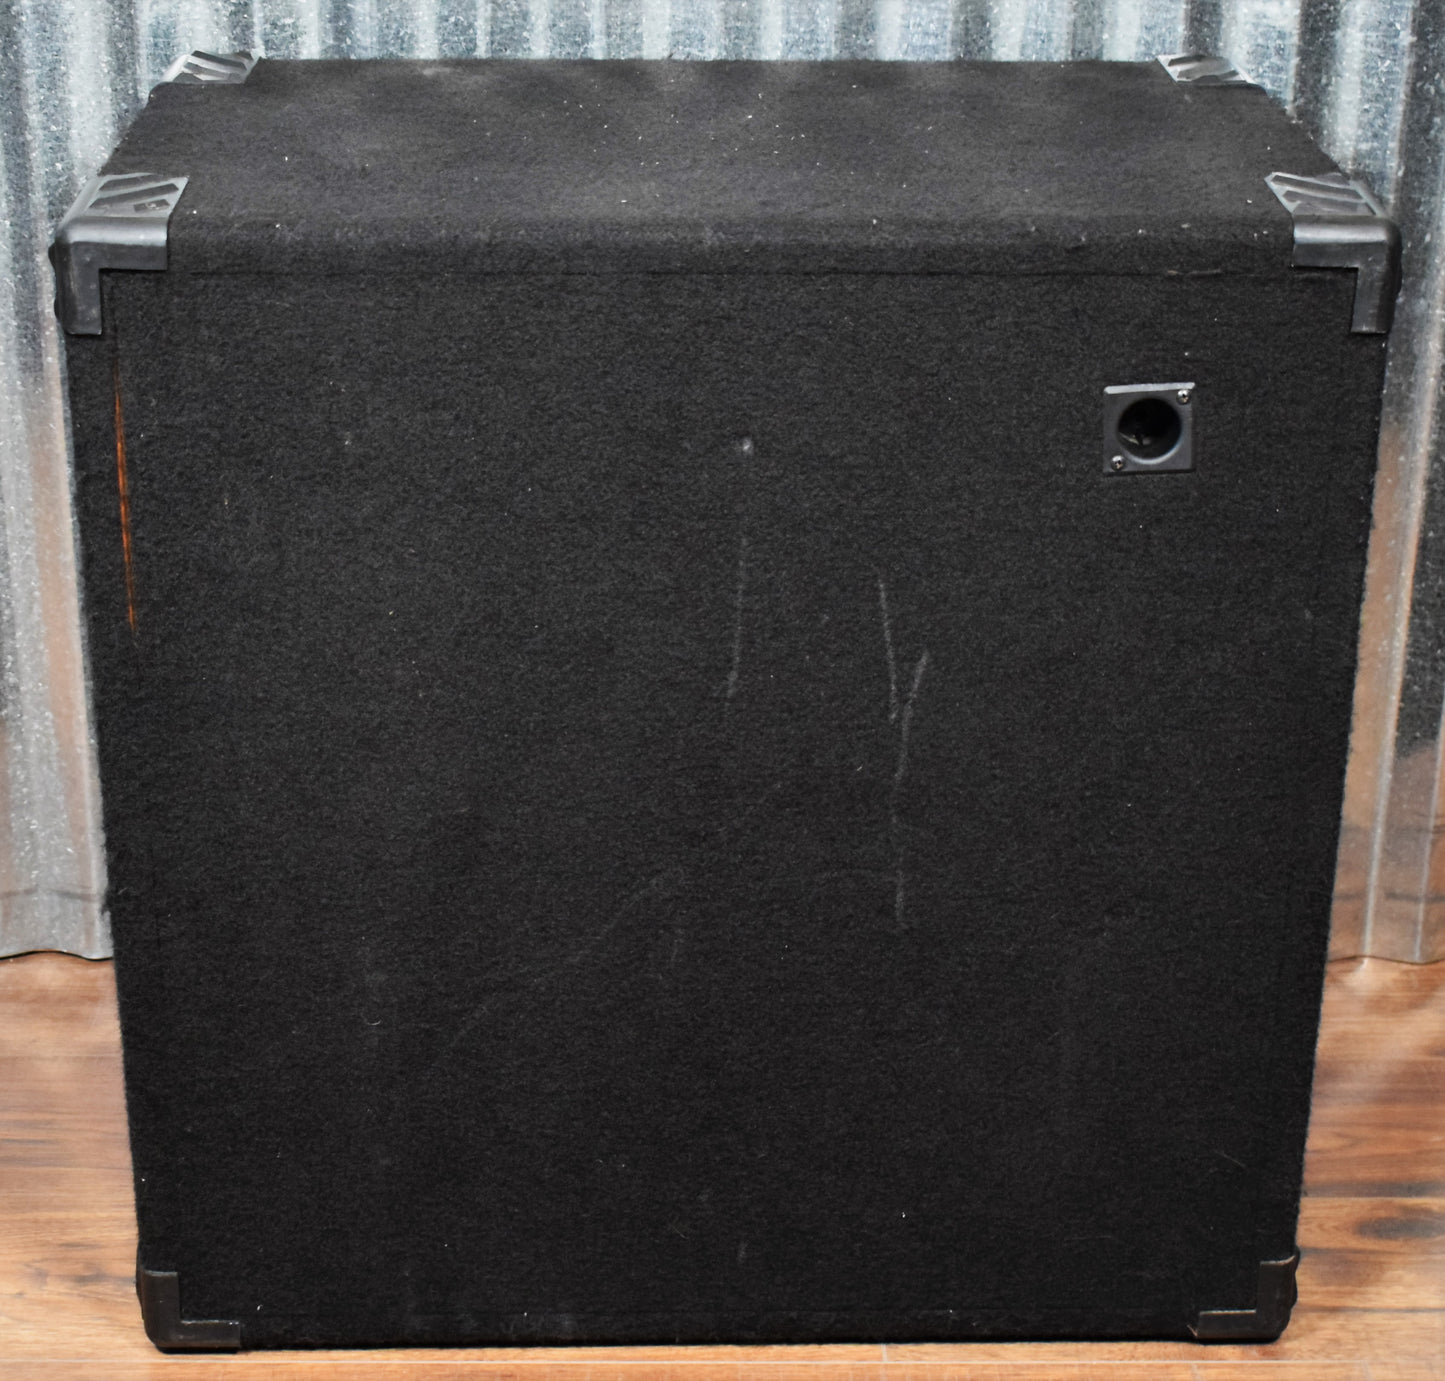 Hartke Transporter HS 410BT 4x10" 200 Watt Bass Amplifier Cabinet Used